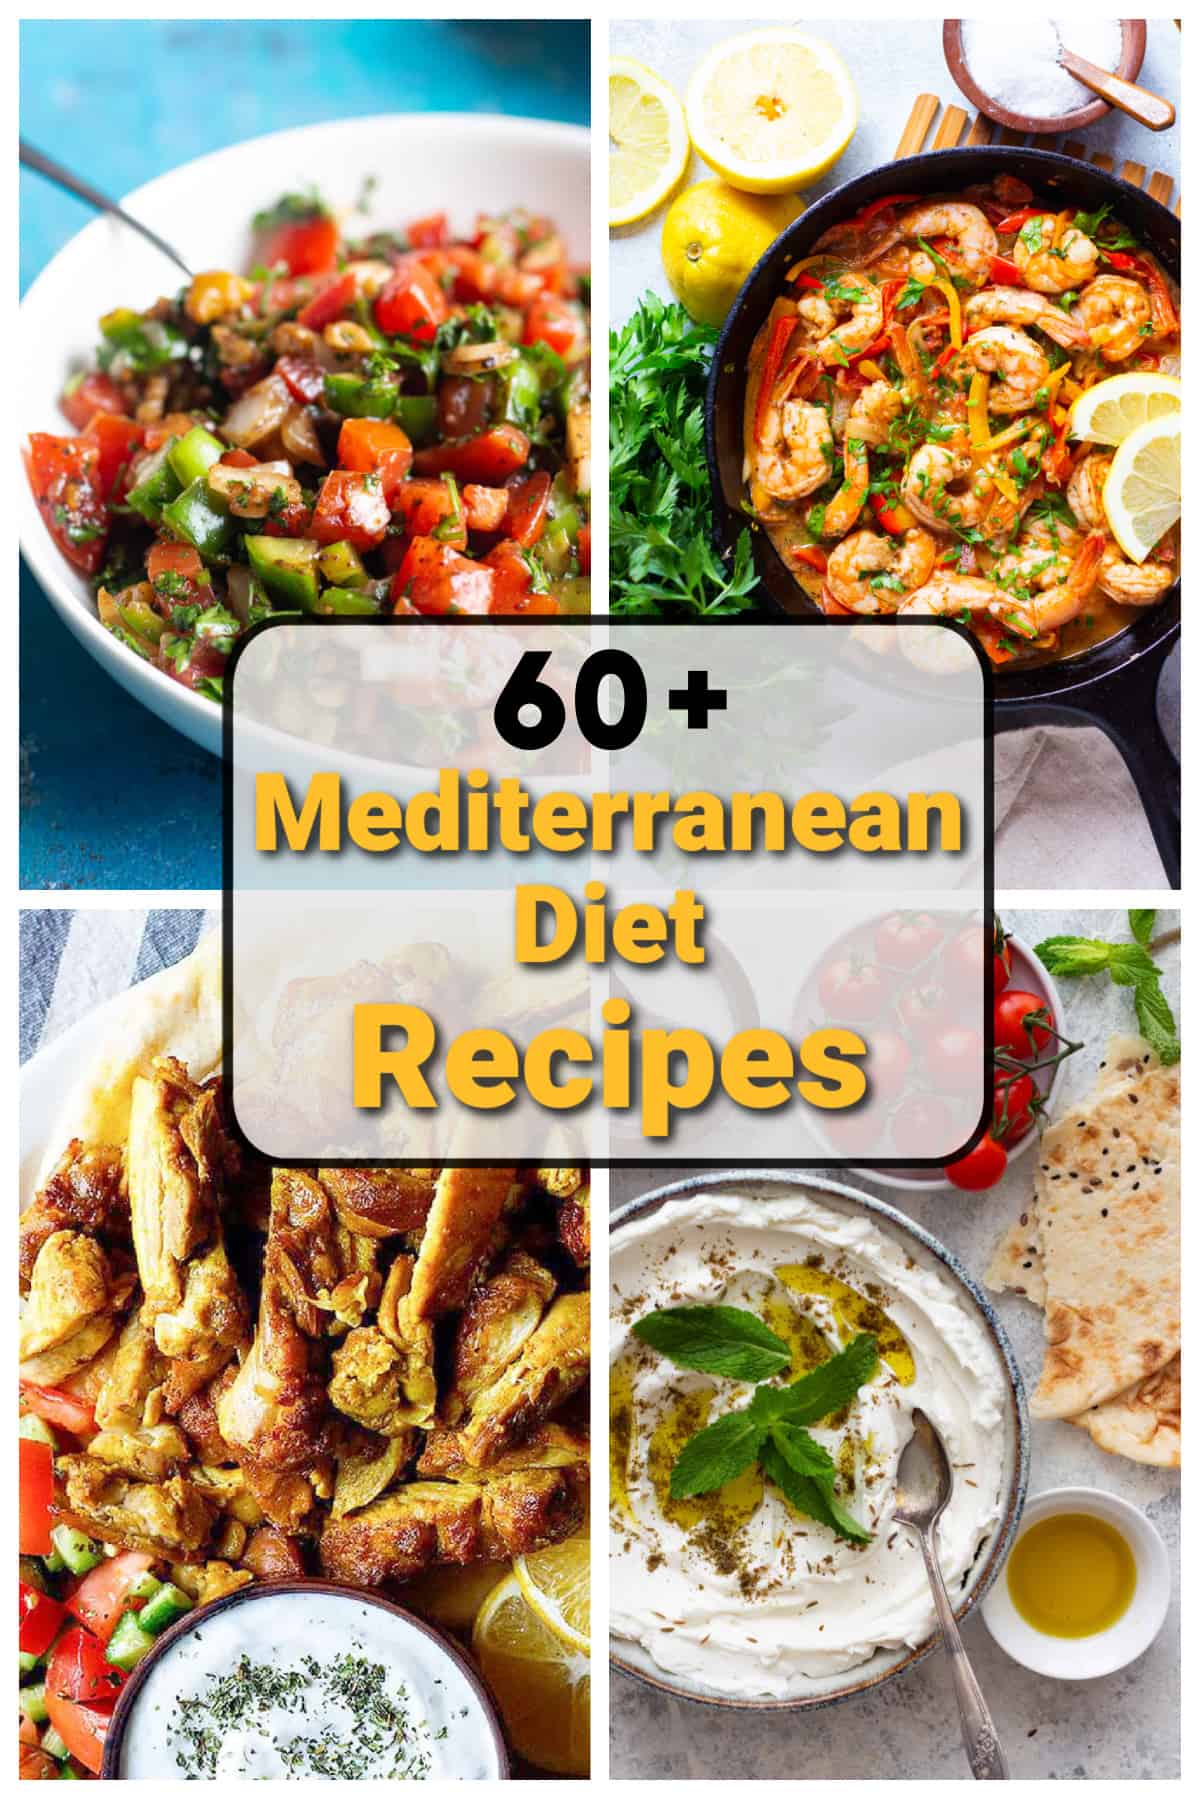 Healthy Mediterranean Party Food Ideas